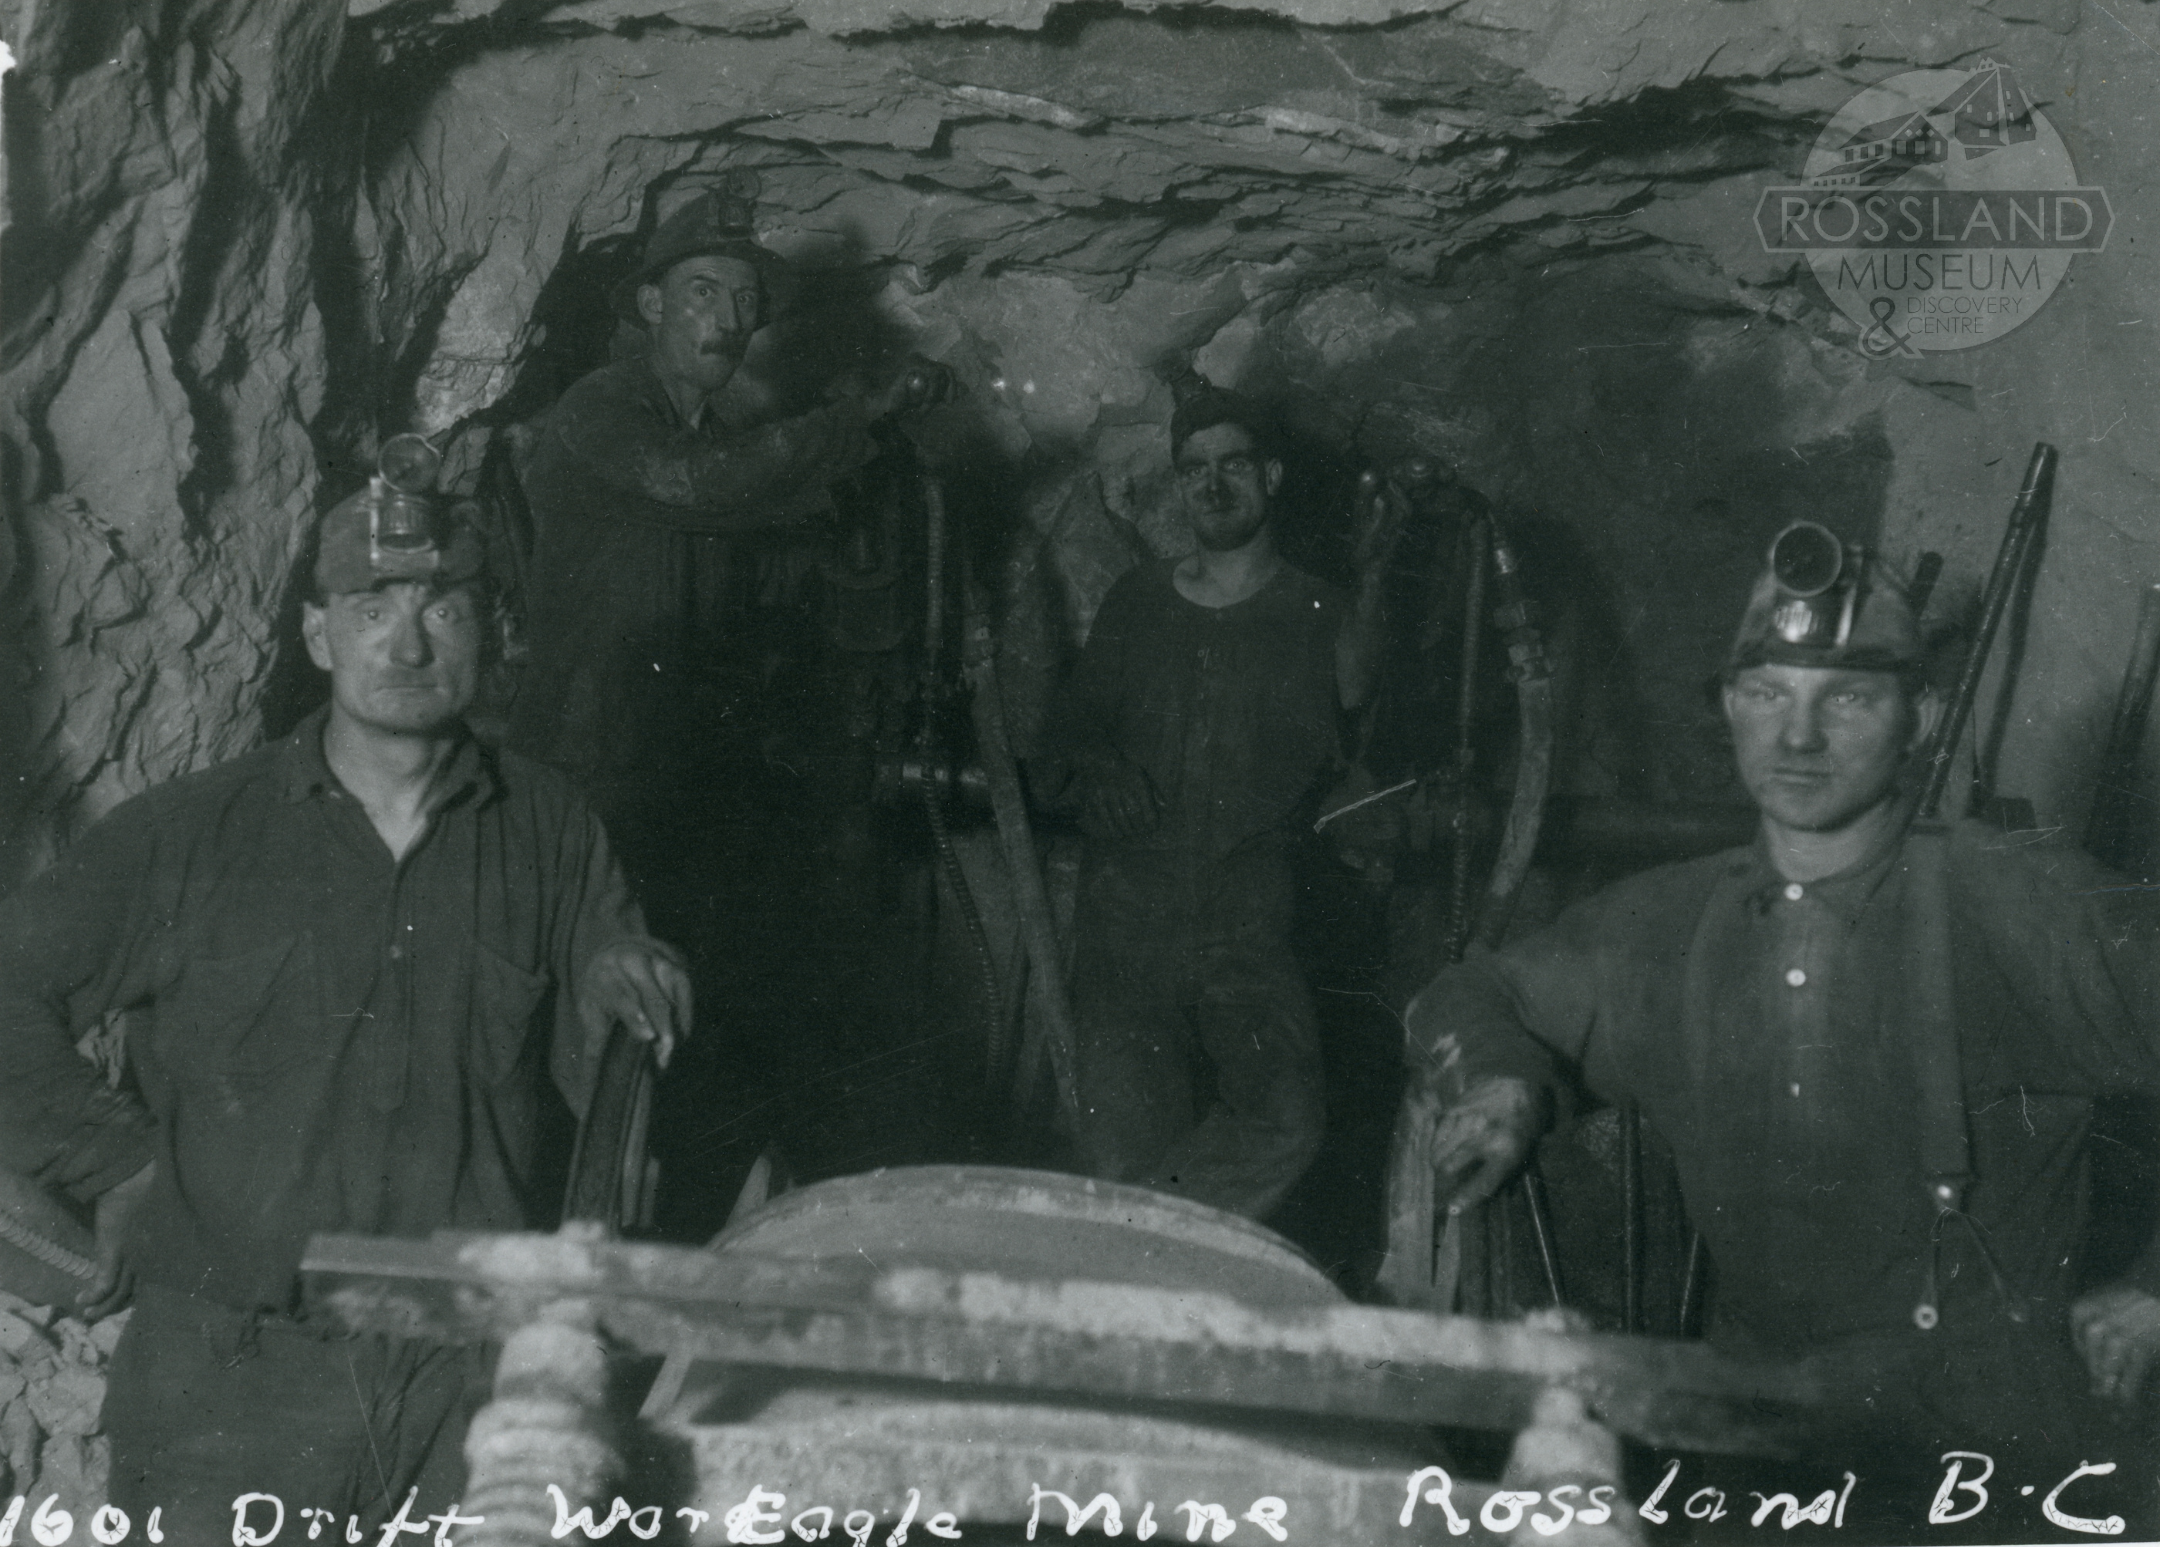 Photo 2304.0141: G141  War Eagle Mine 1601 Drift, 1922